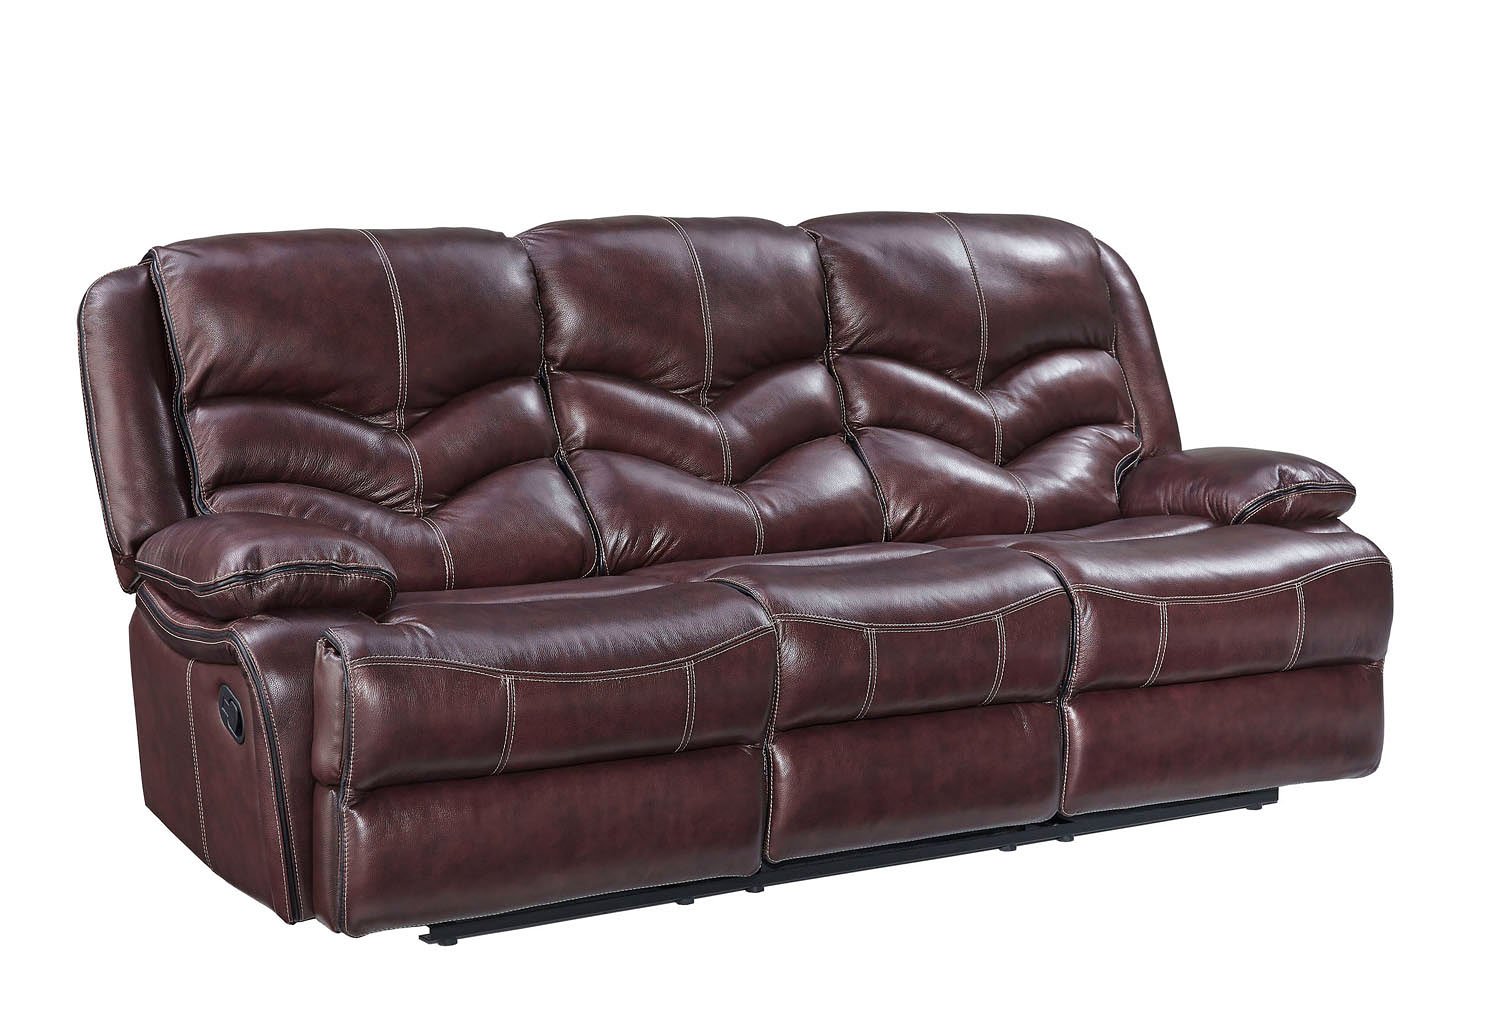 Denali Reclining Sofa Standard Furniture Furniture Cart